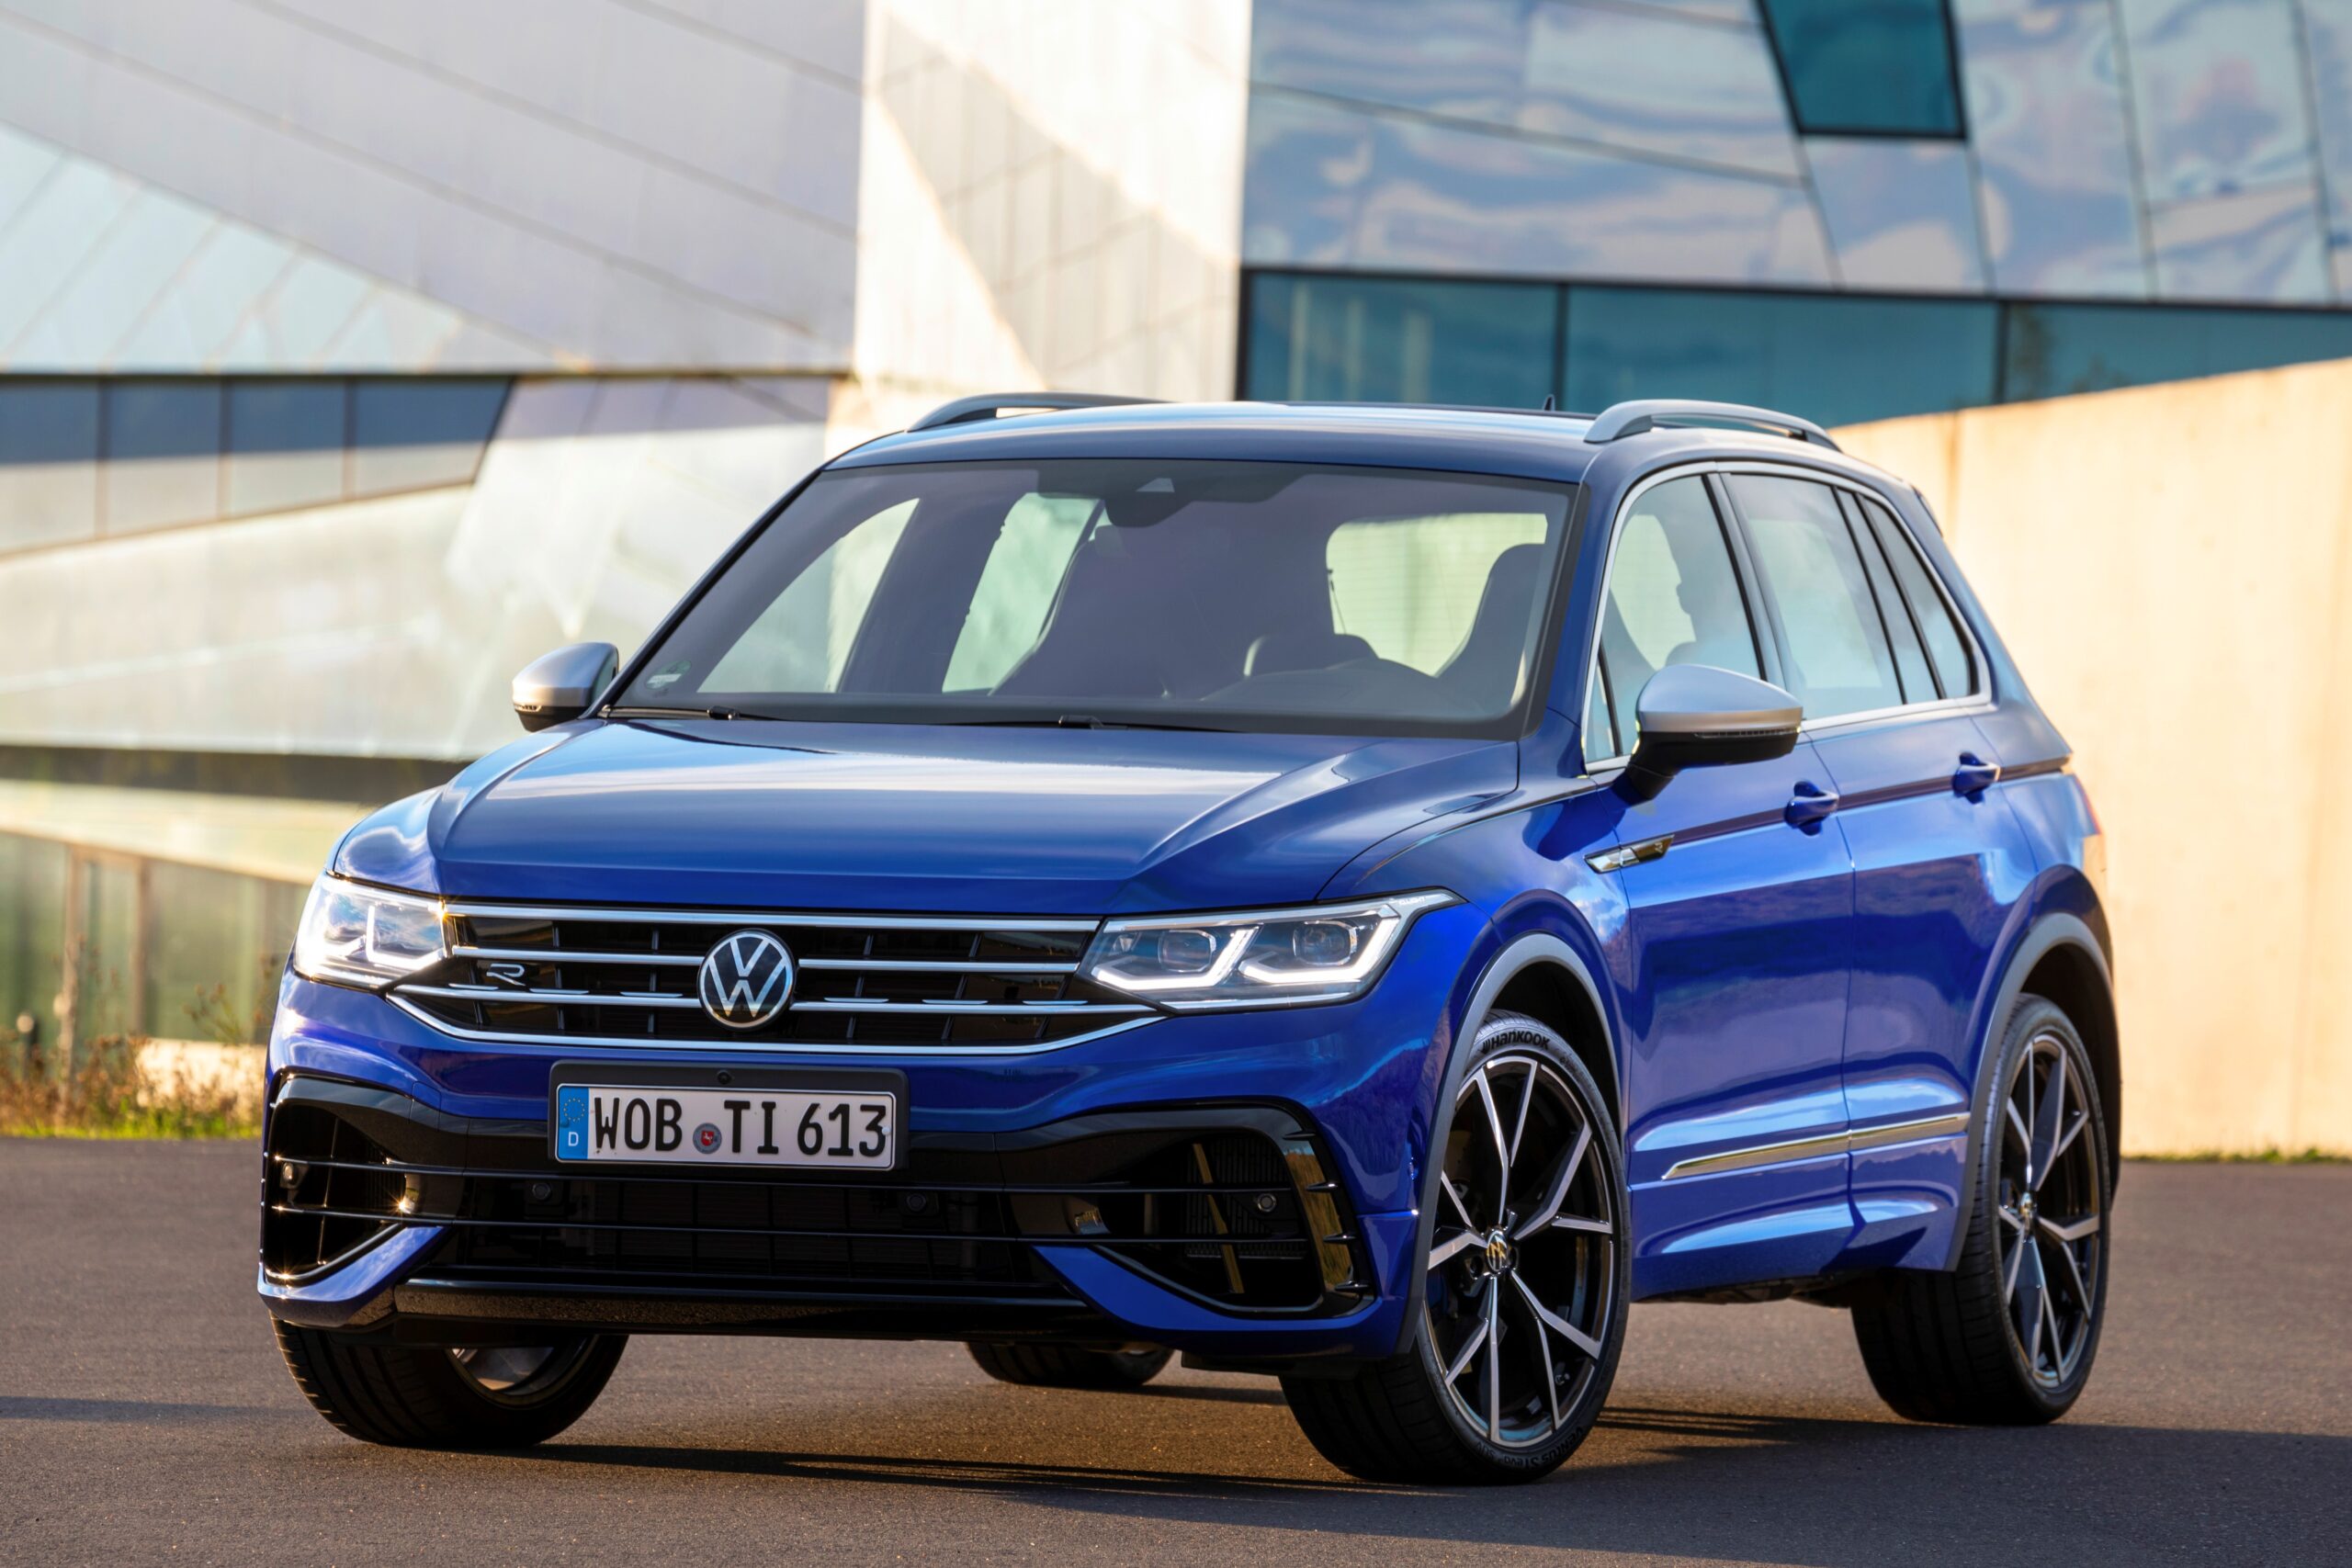 Promozione Volkswagen Tiguan aprile 2021: da 249 euro al mese